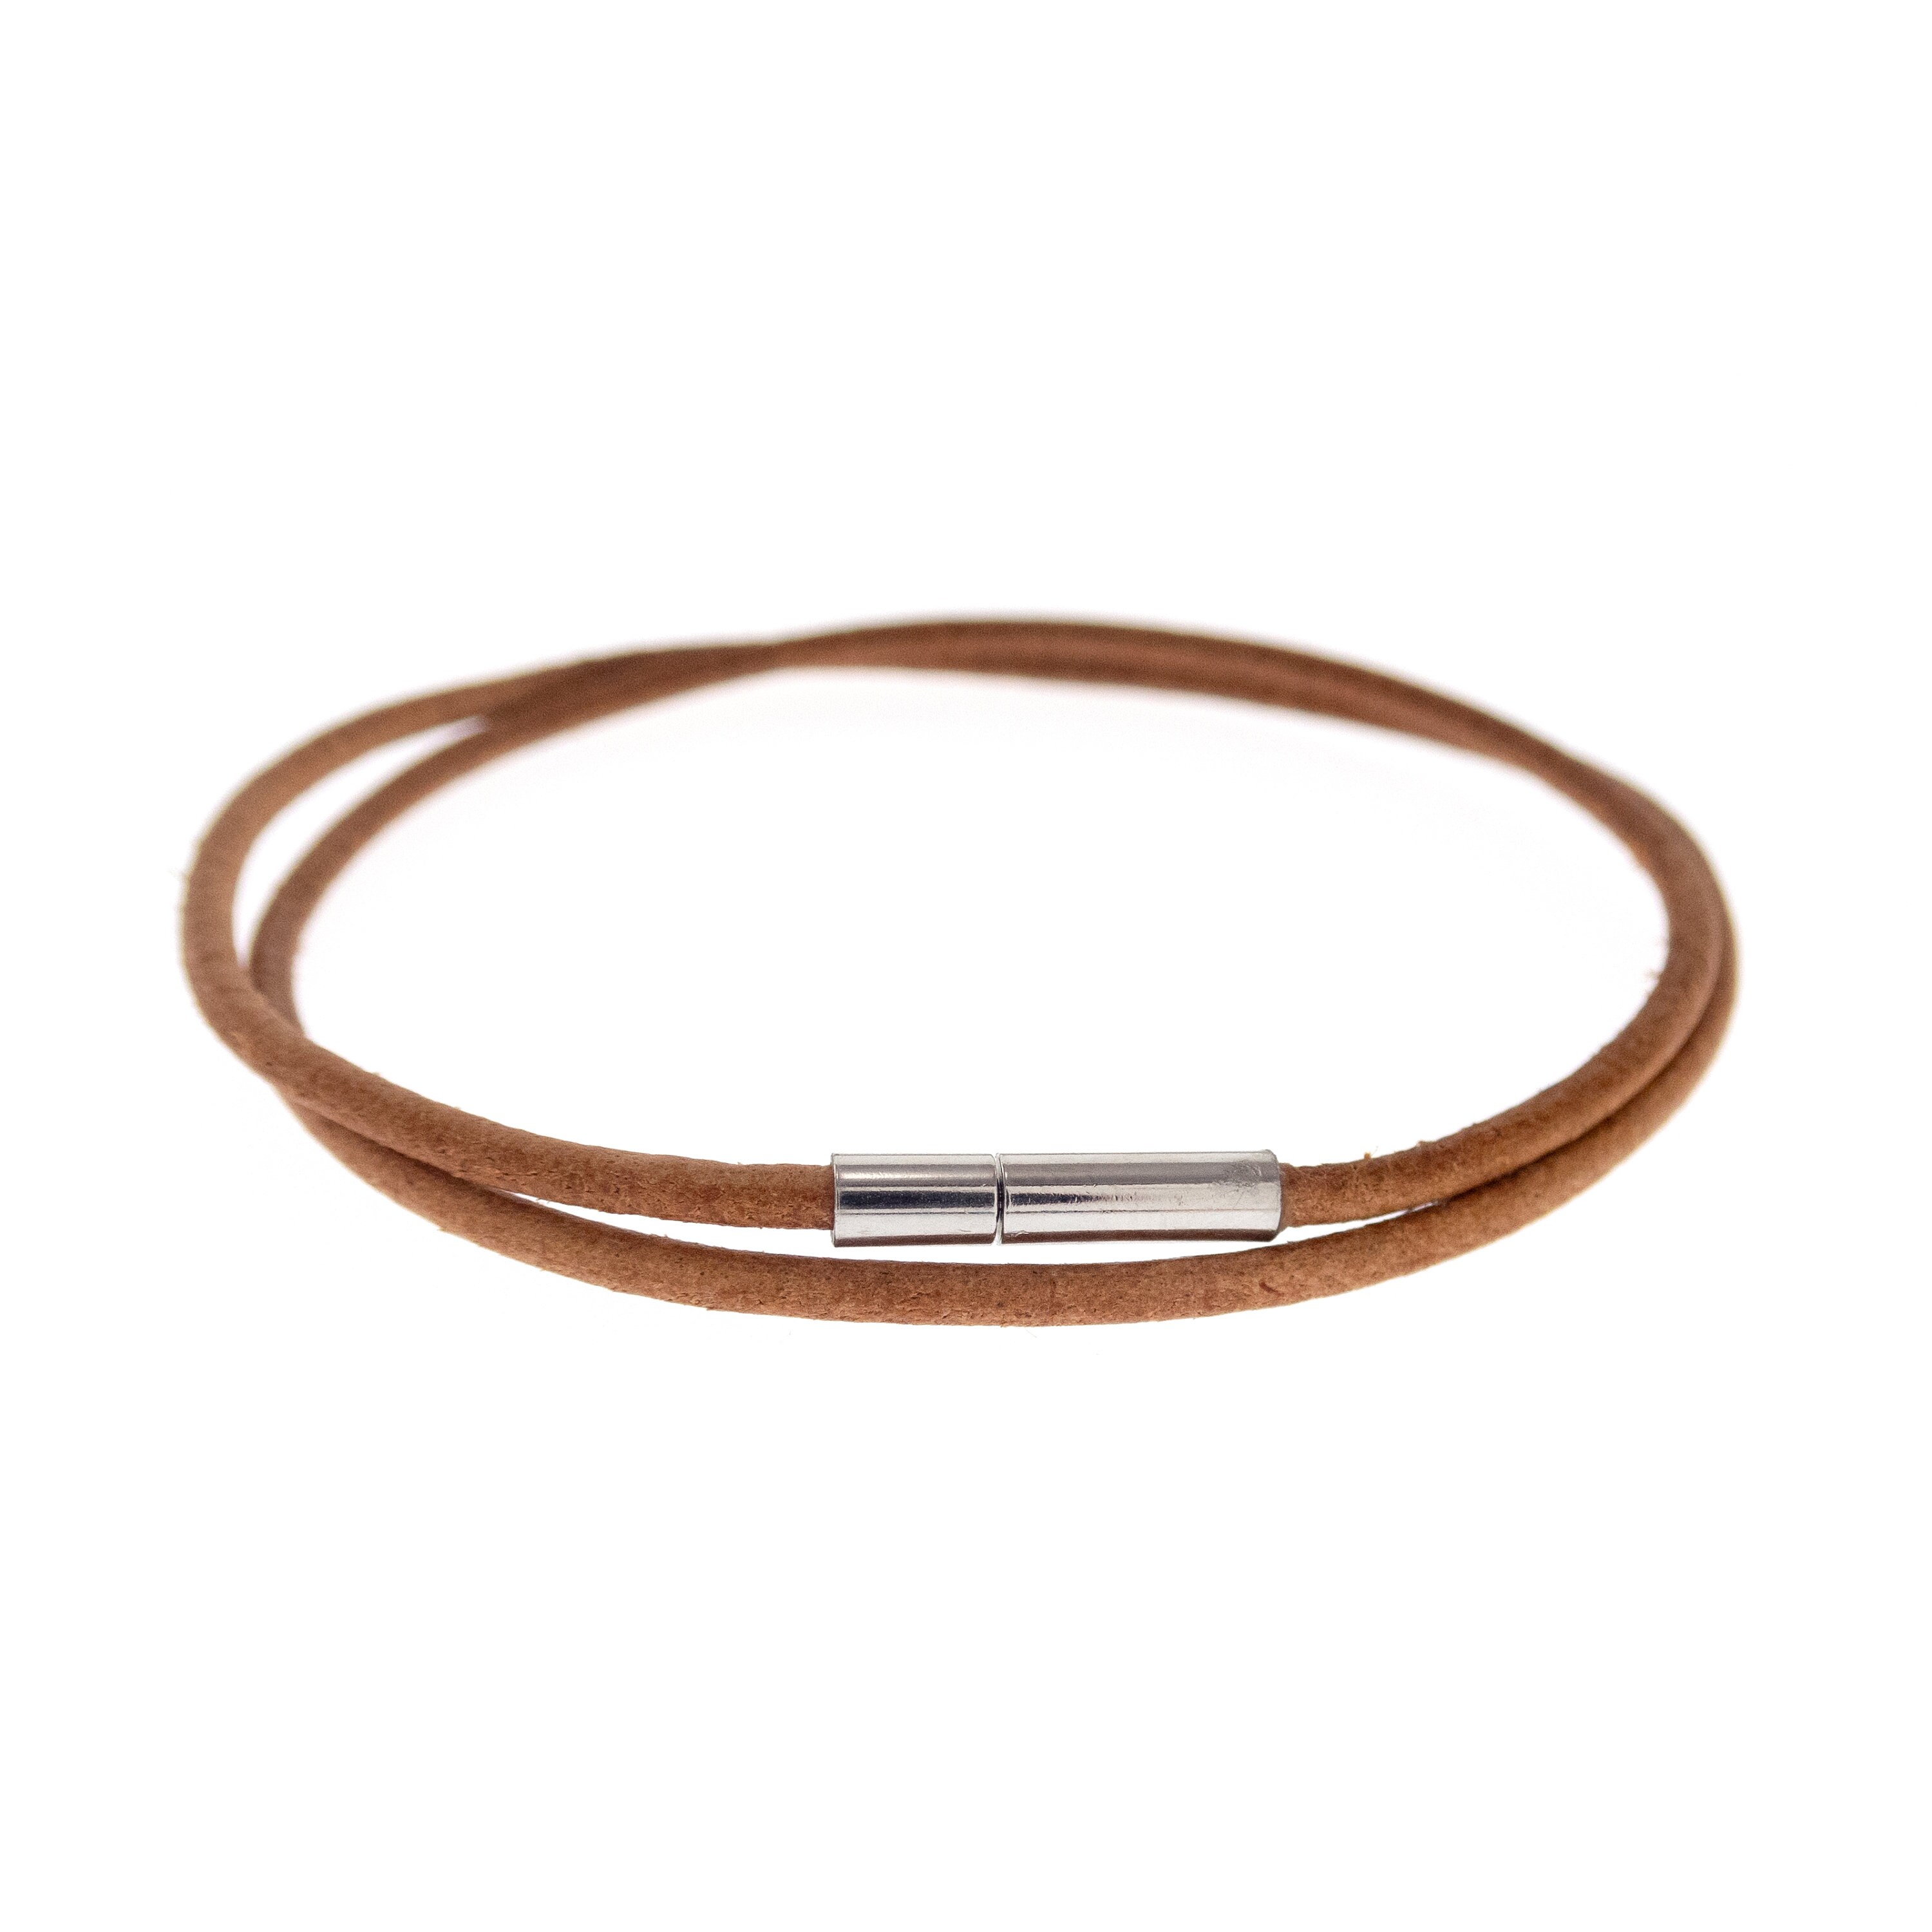 Haiti Design Co: Jumping Beaded Leather Bracelet – I AM CARIBBEING